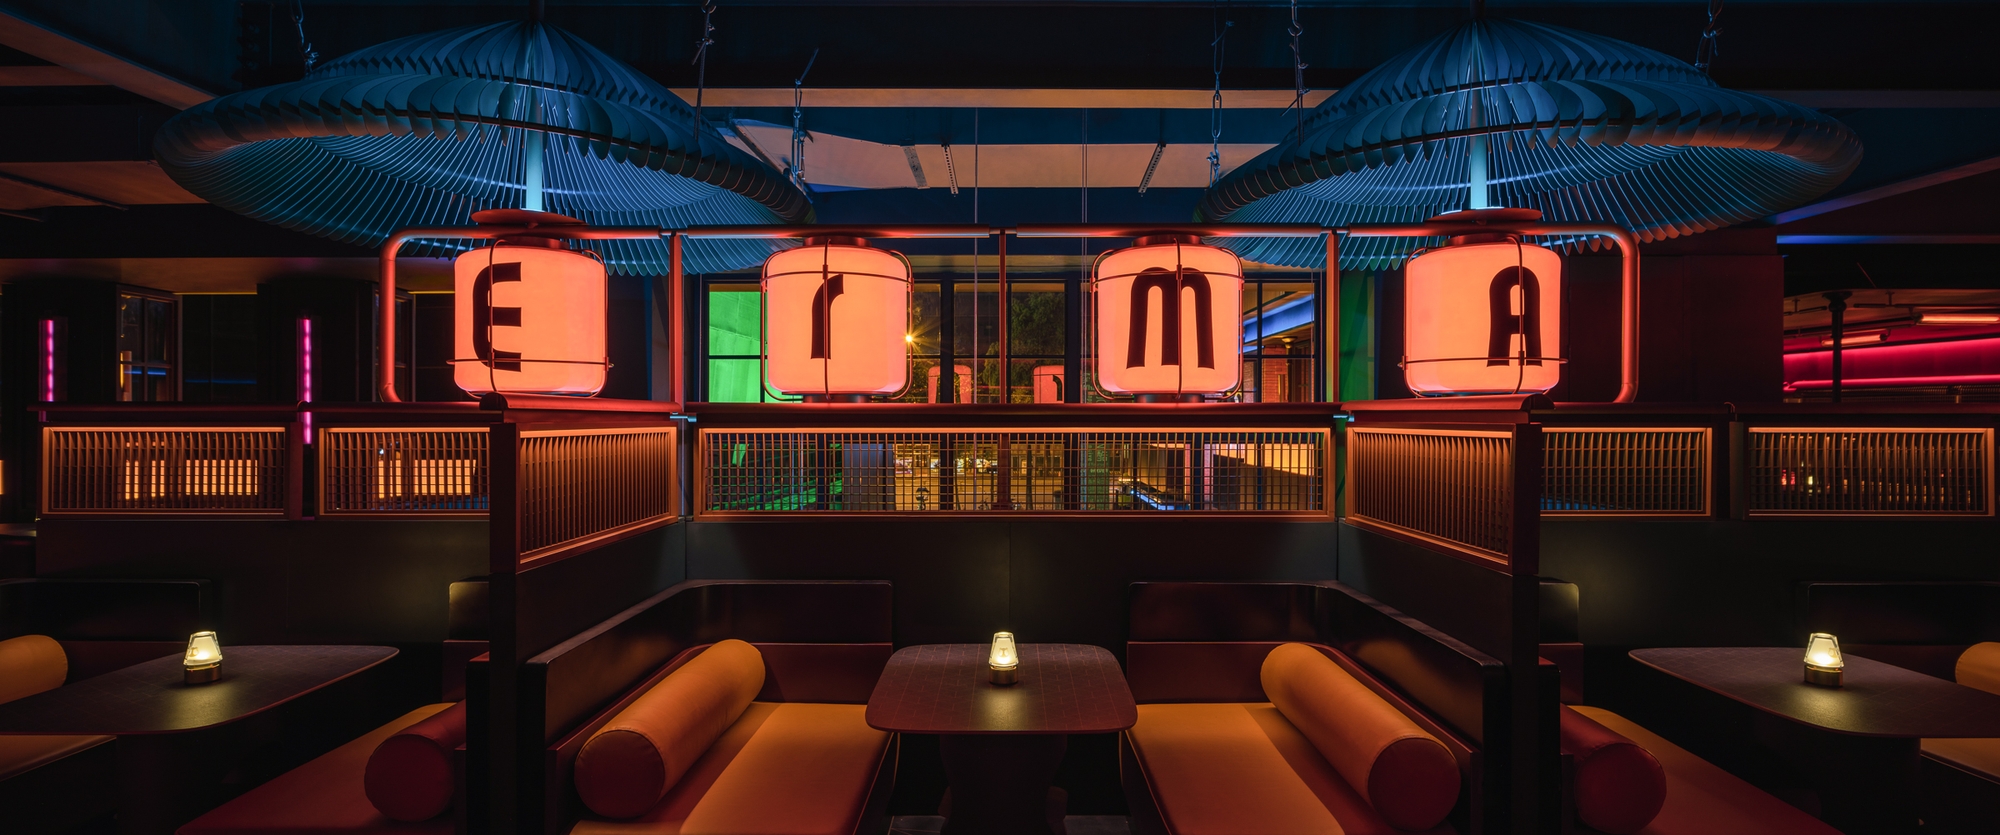 图片[4]|太古里二马酒吧|ART-Arrakis | 建筑室内设计的创新与灵感